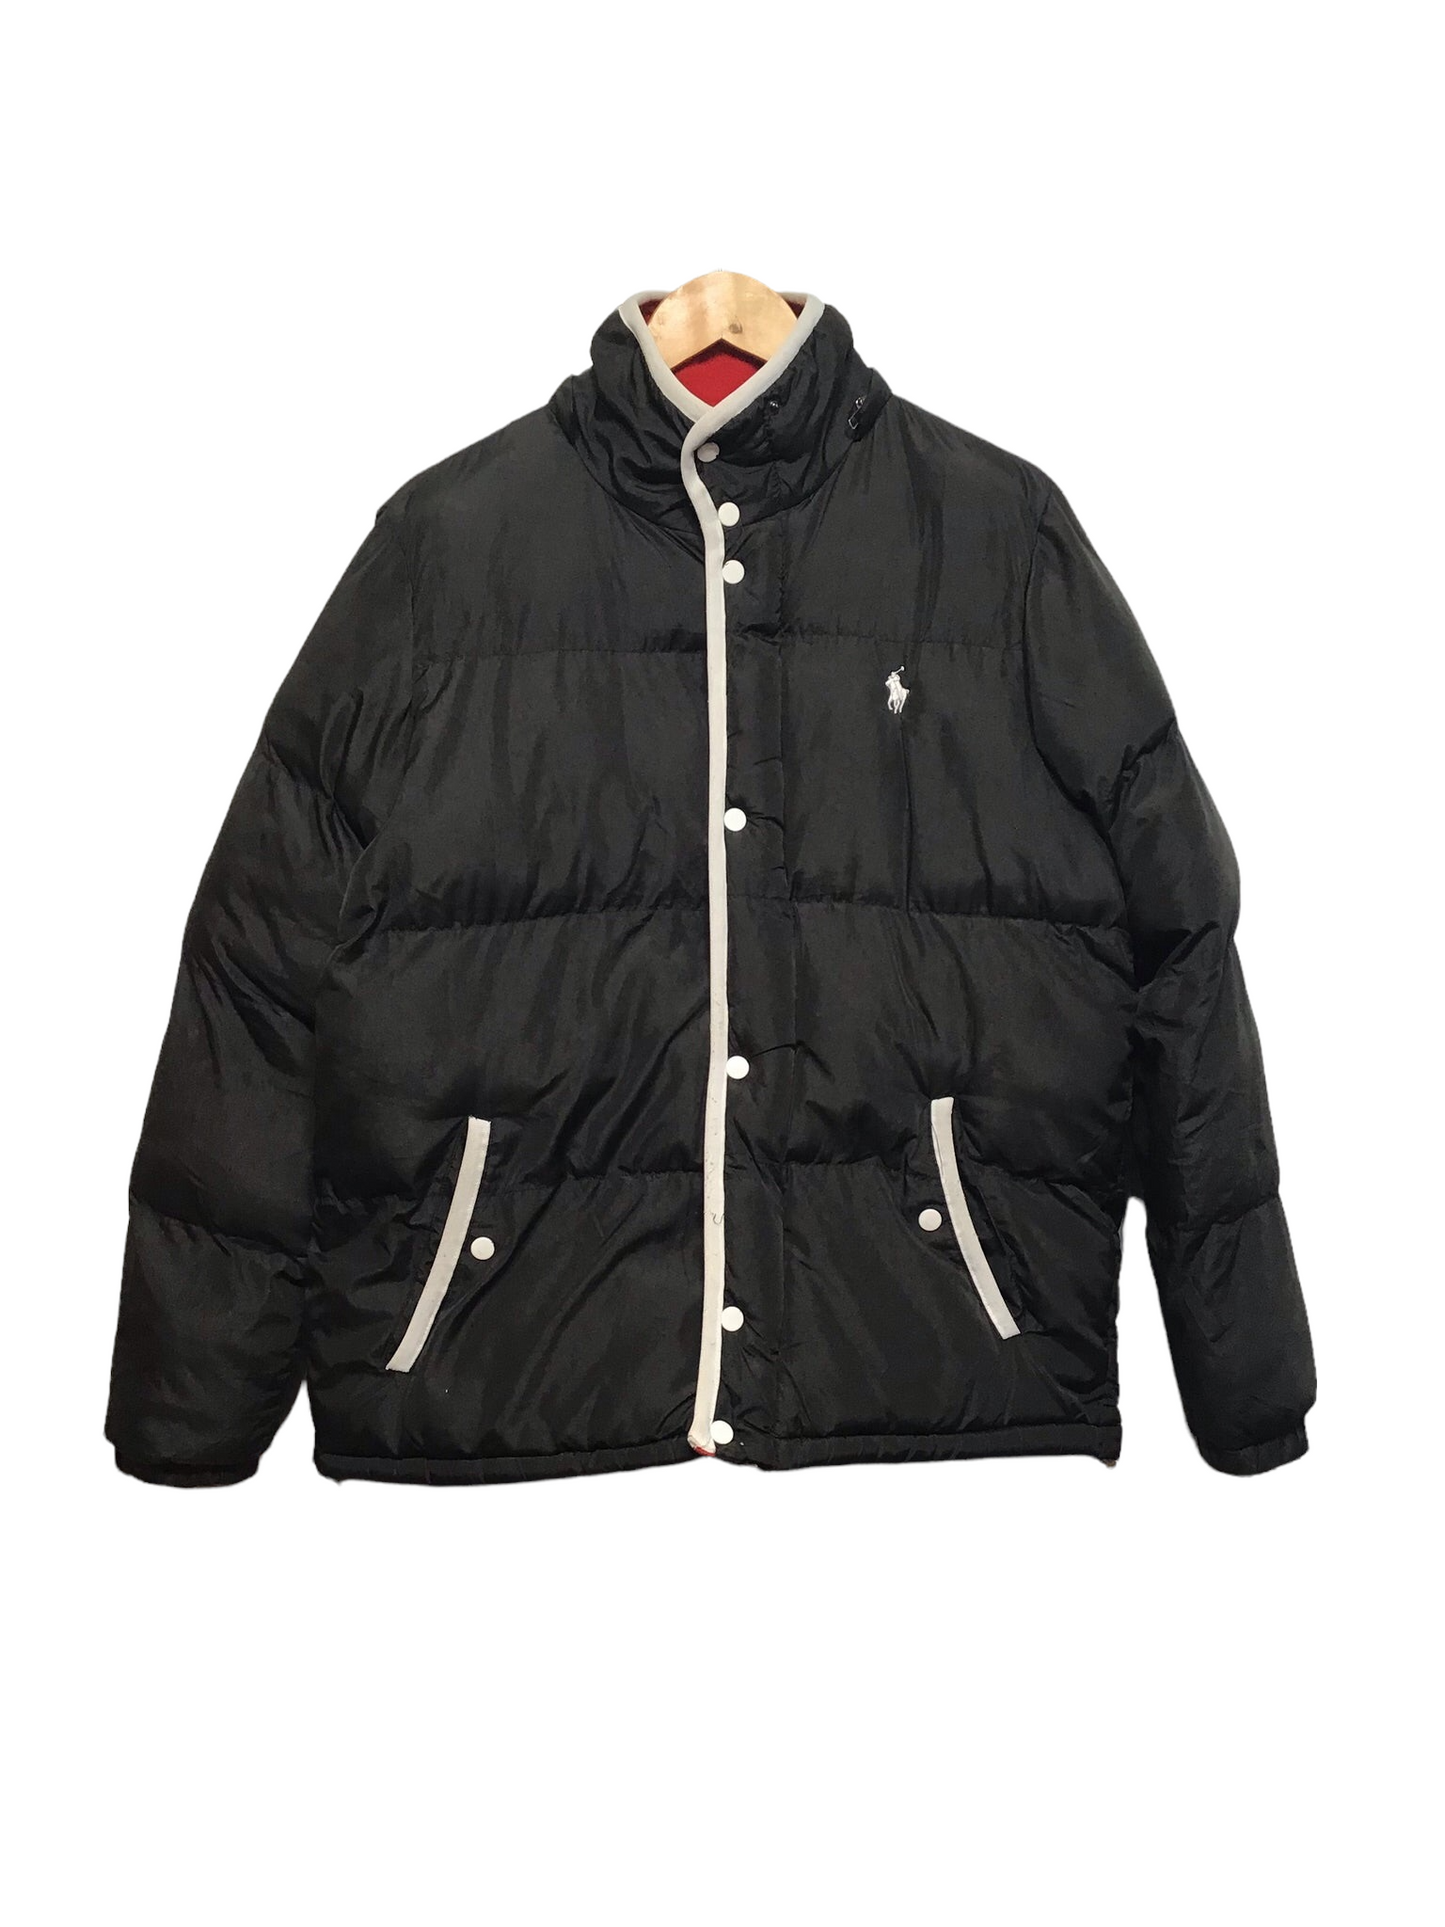 Ralph Lauren Puffer Jacket (Size M)